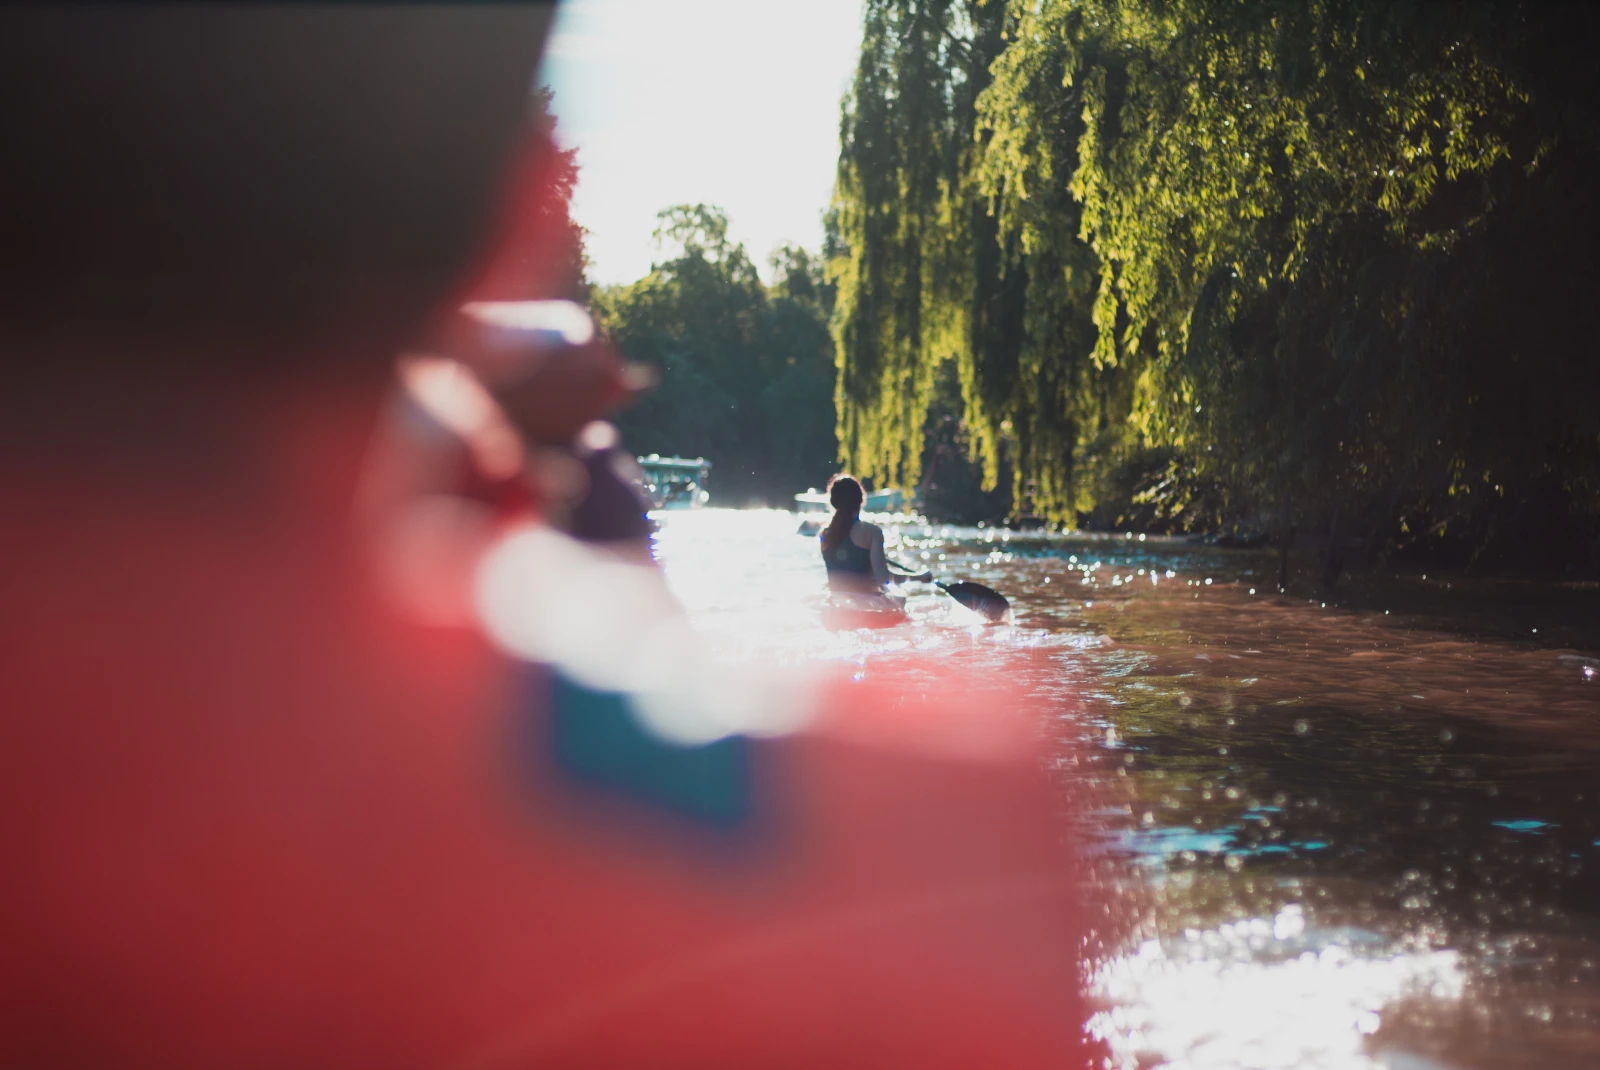 Tigre River kayaking. 